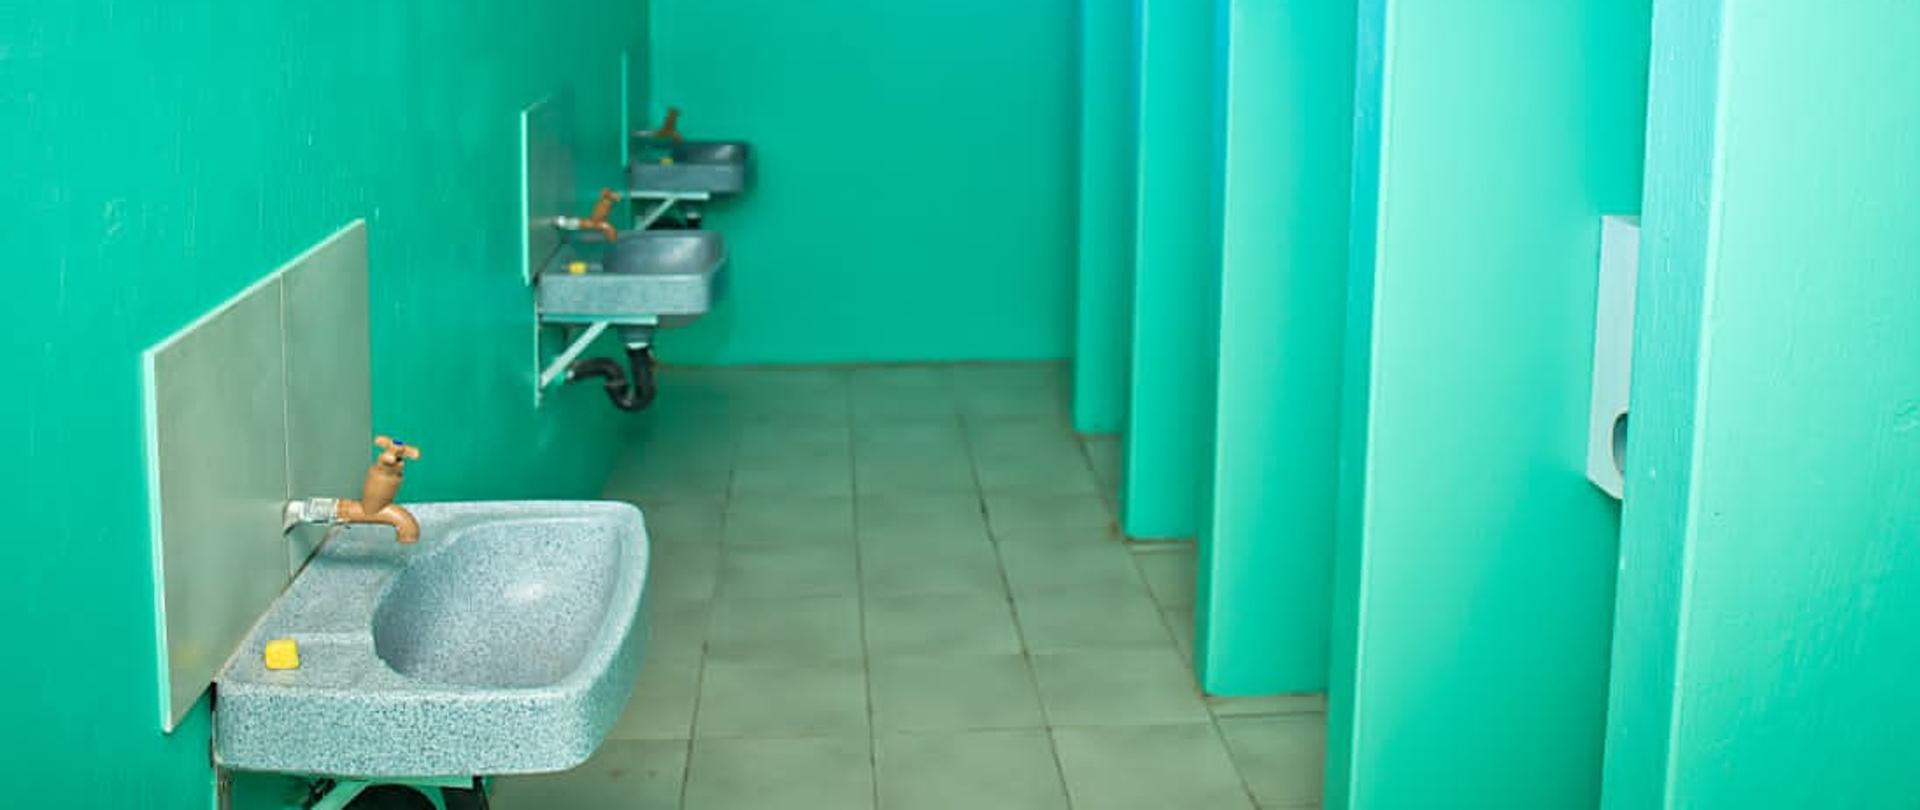 wyremontowana łazienka w kolorze zielonym. czyste pomieszczenie z umywalkami